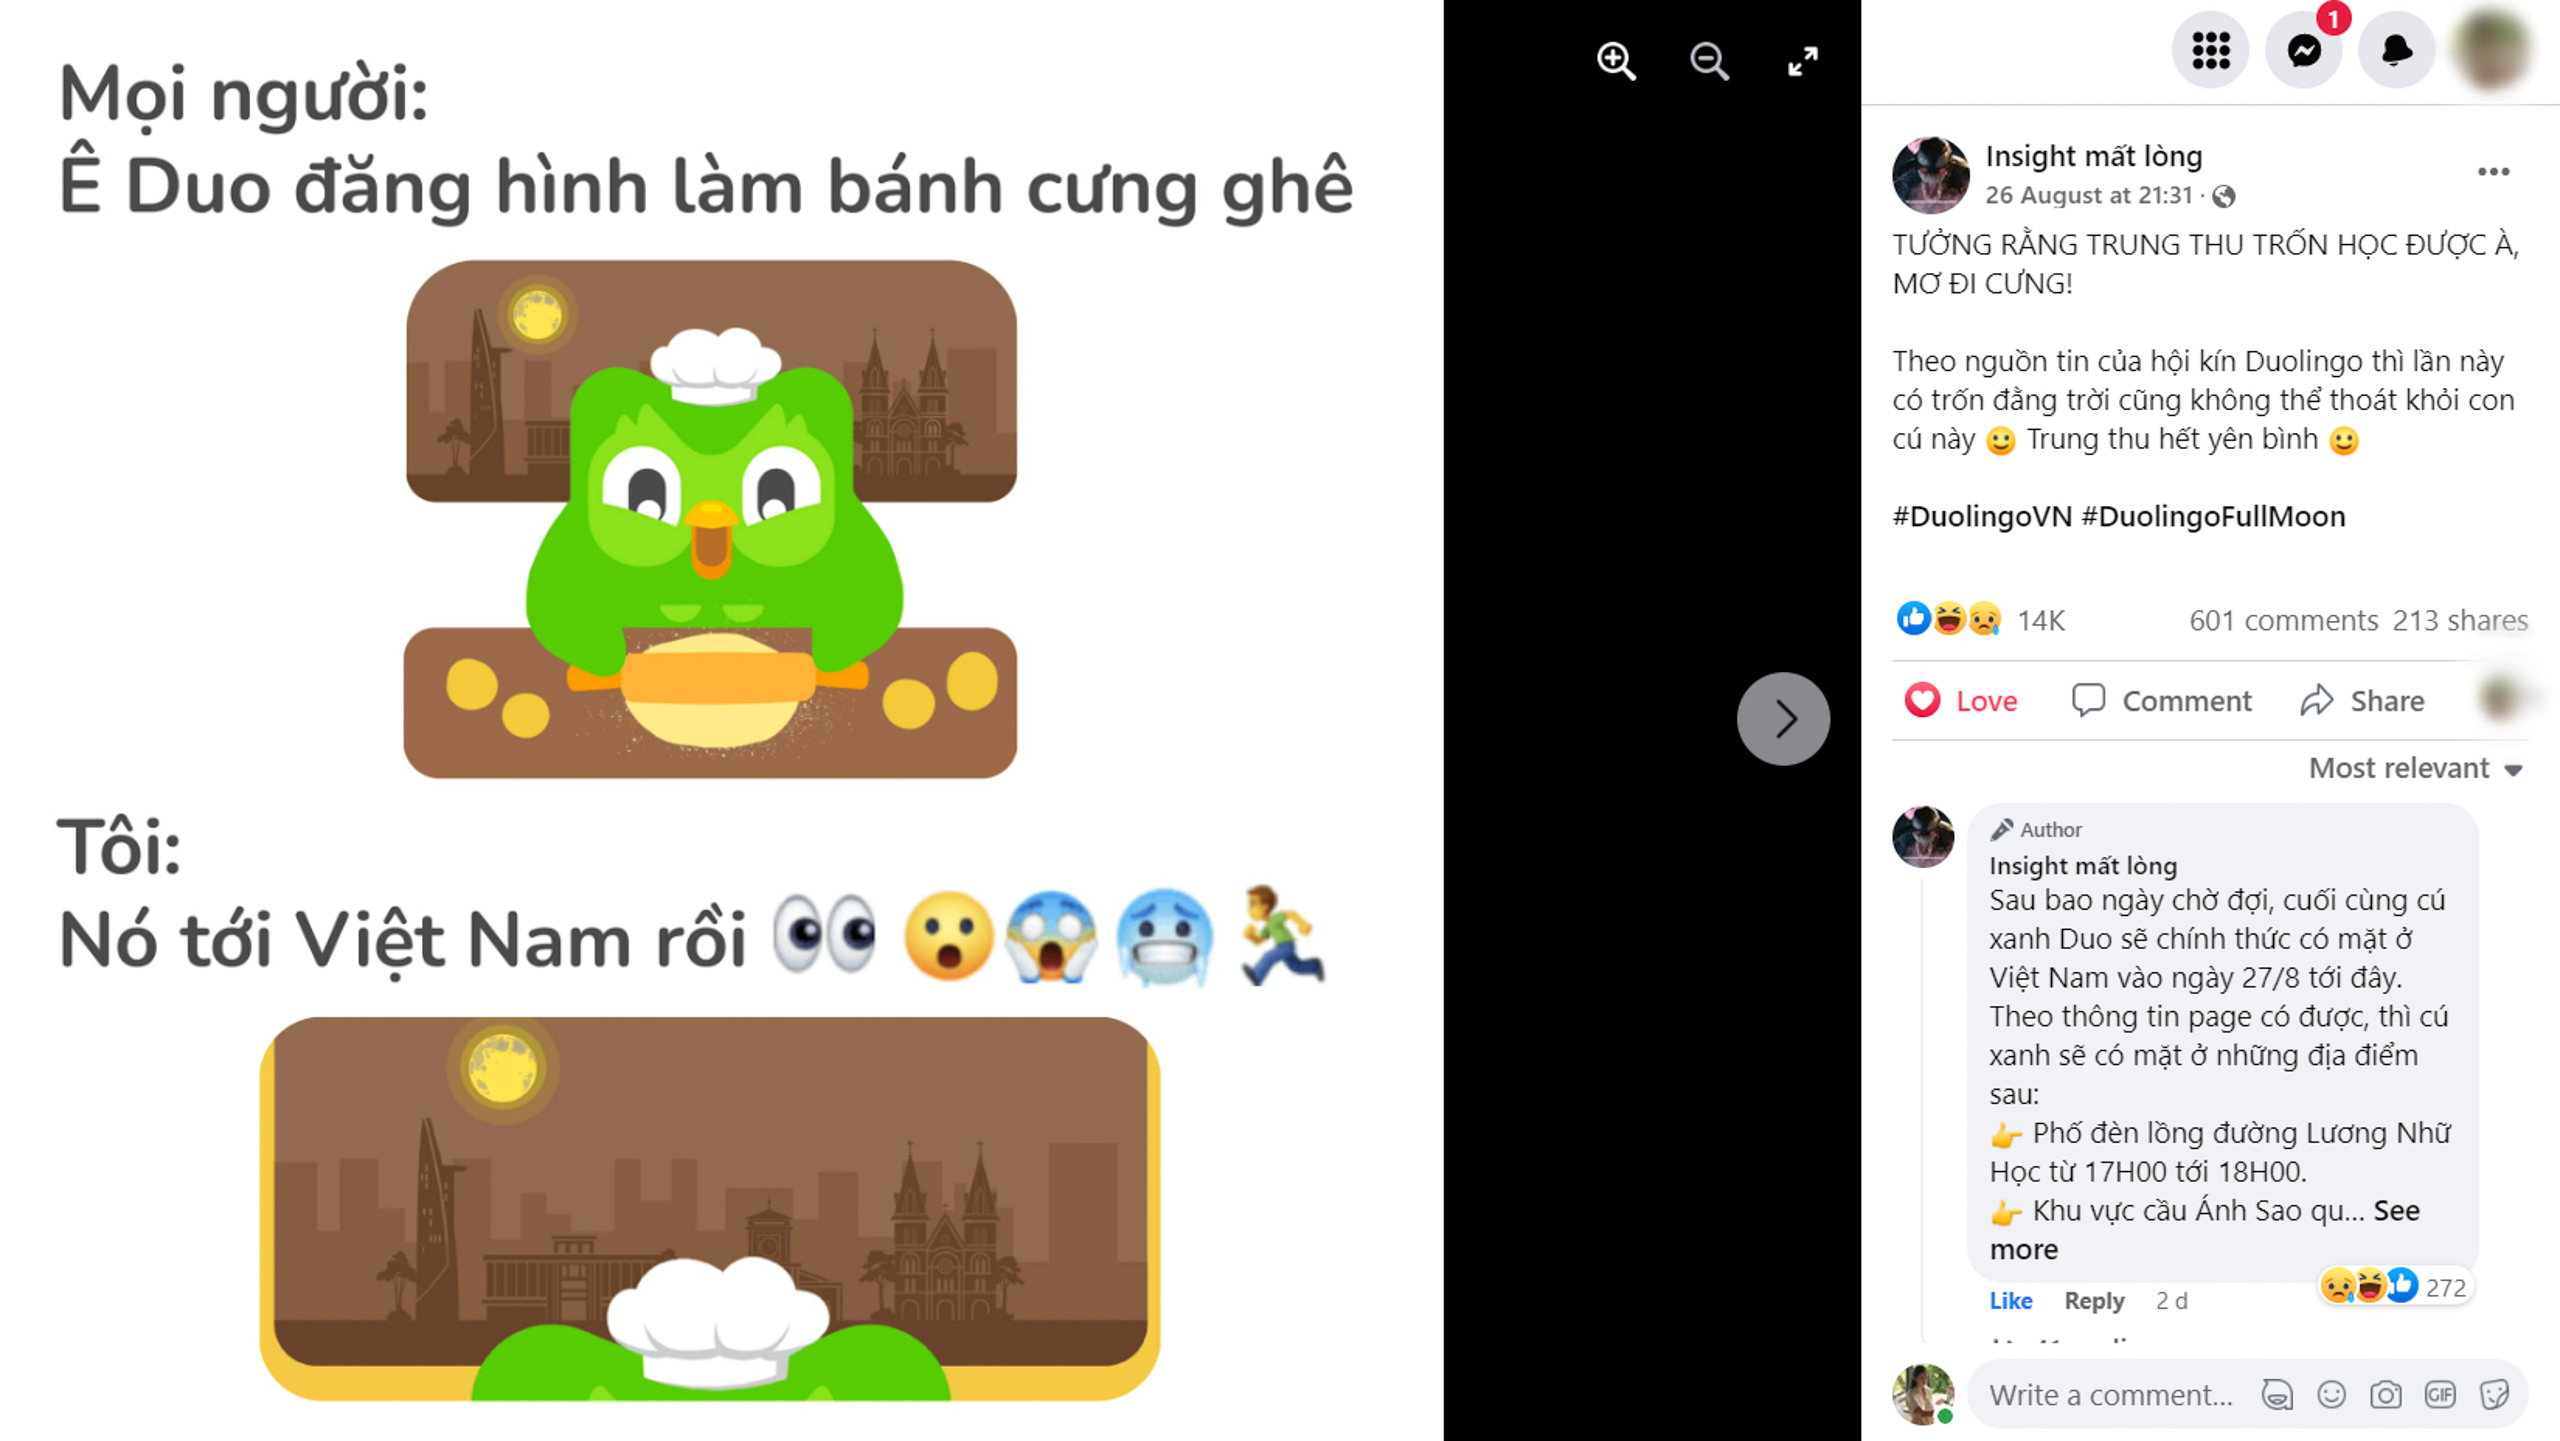 Duolingo lần đầu đến Việt Nam với những chiếc bánh Trung Thu nhắc nhở học ngoại ngữ